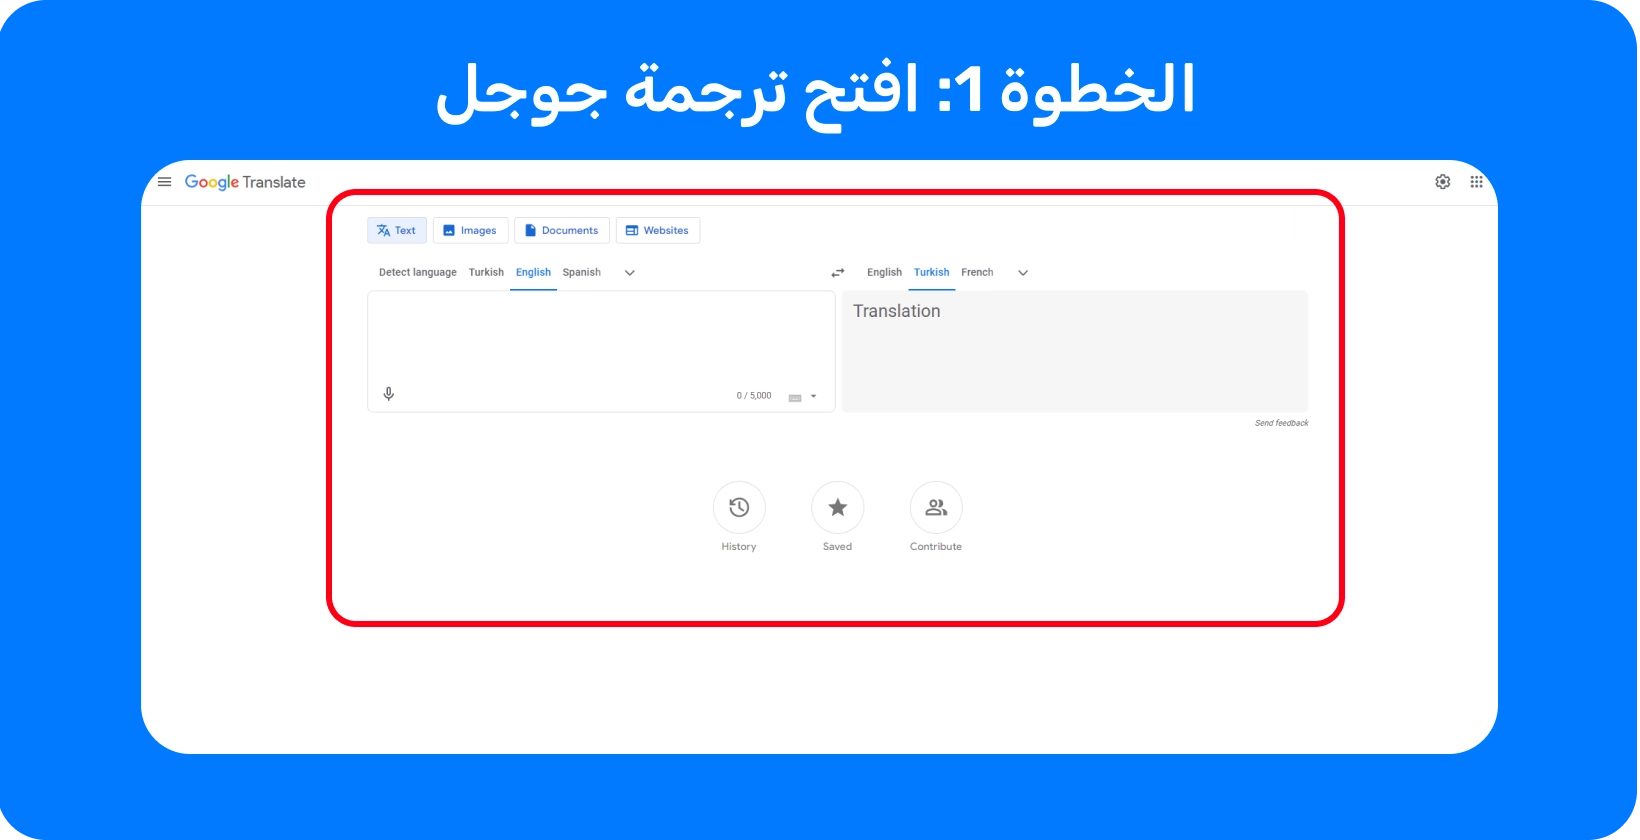 Google واجهة ترجمة جاهزة لتحويل الكلمات المنطوقة إلى نص ، توضح الخطوة 1 في العملية.